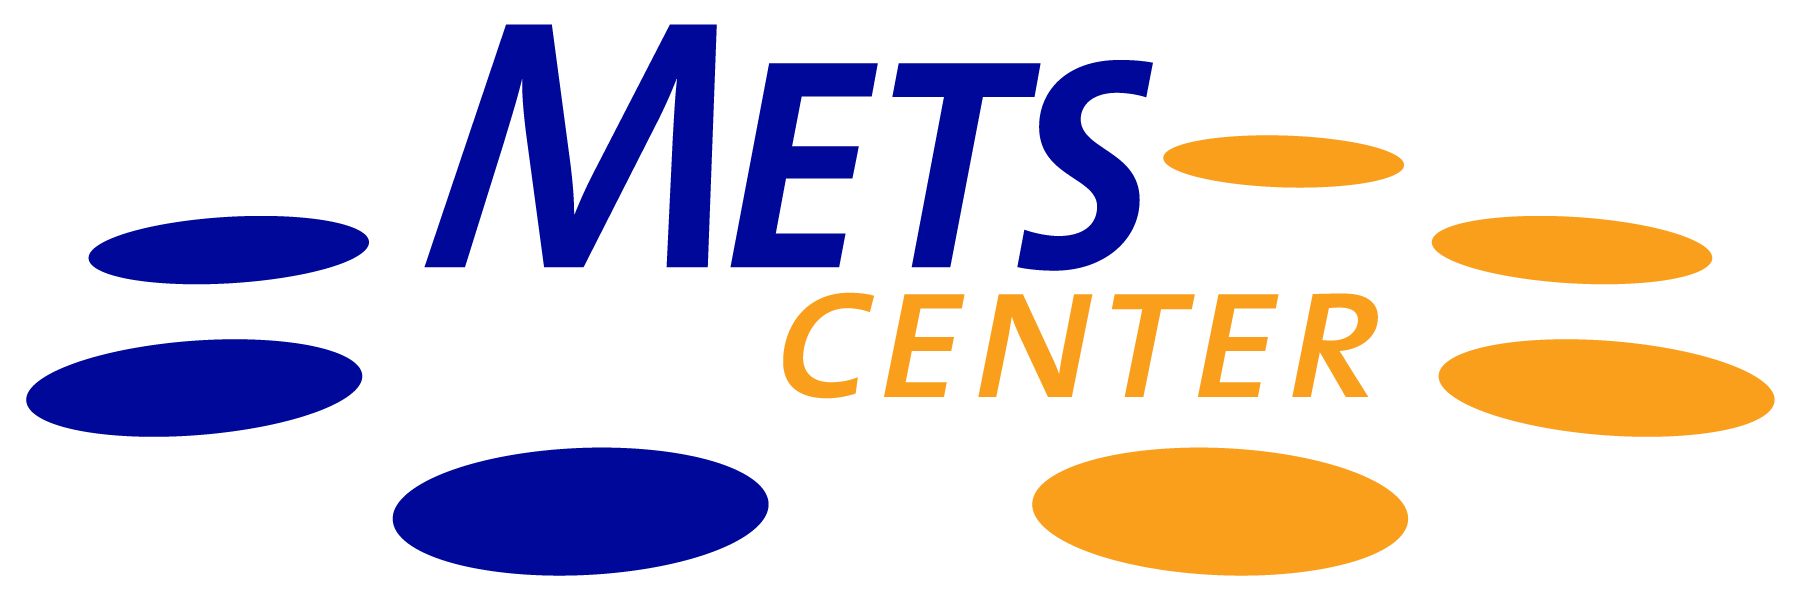 Mets-opleiding-centralist